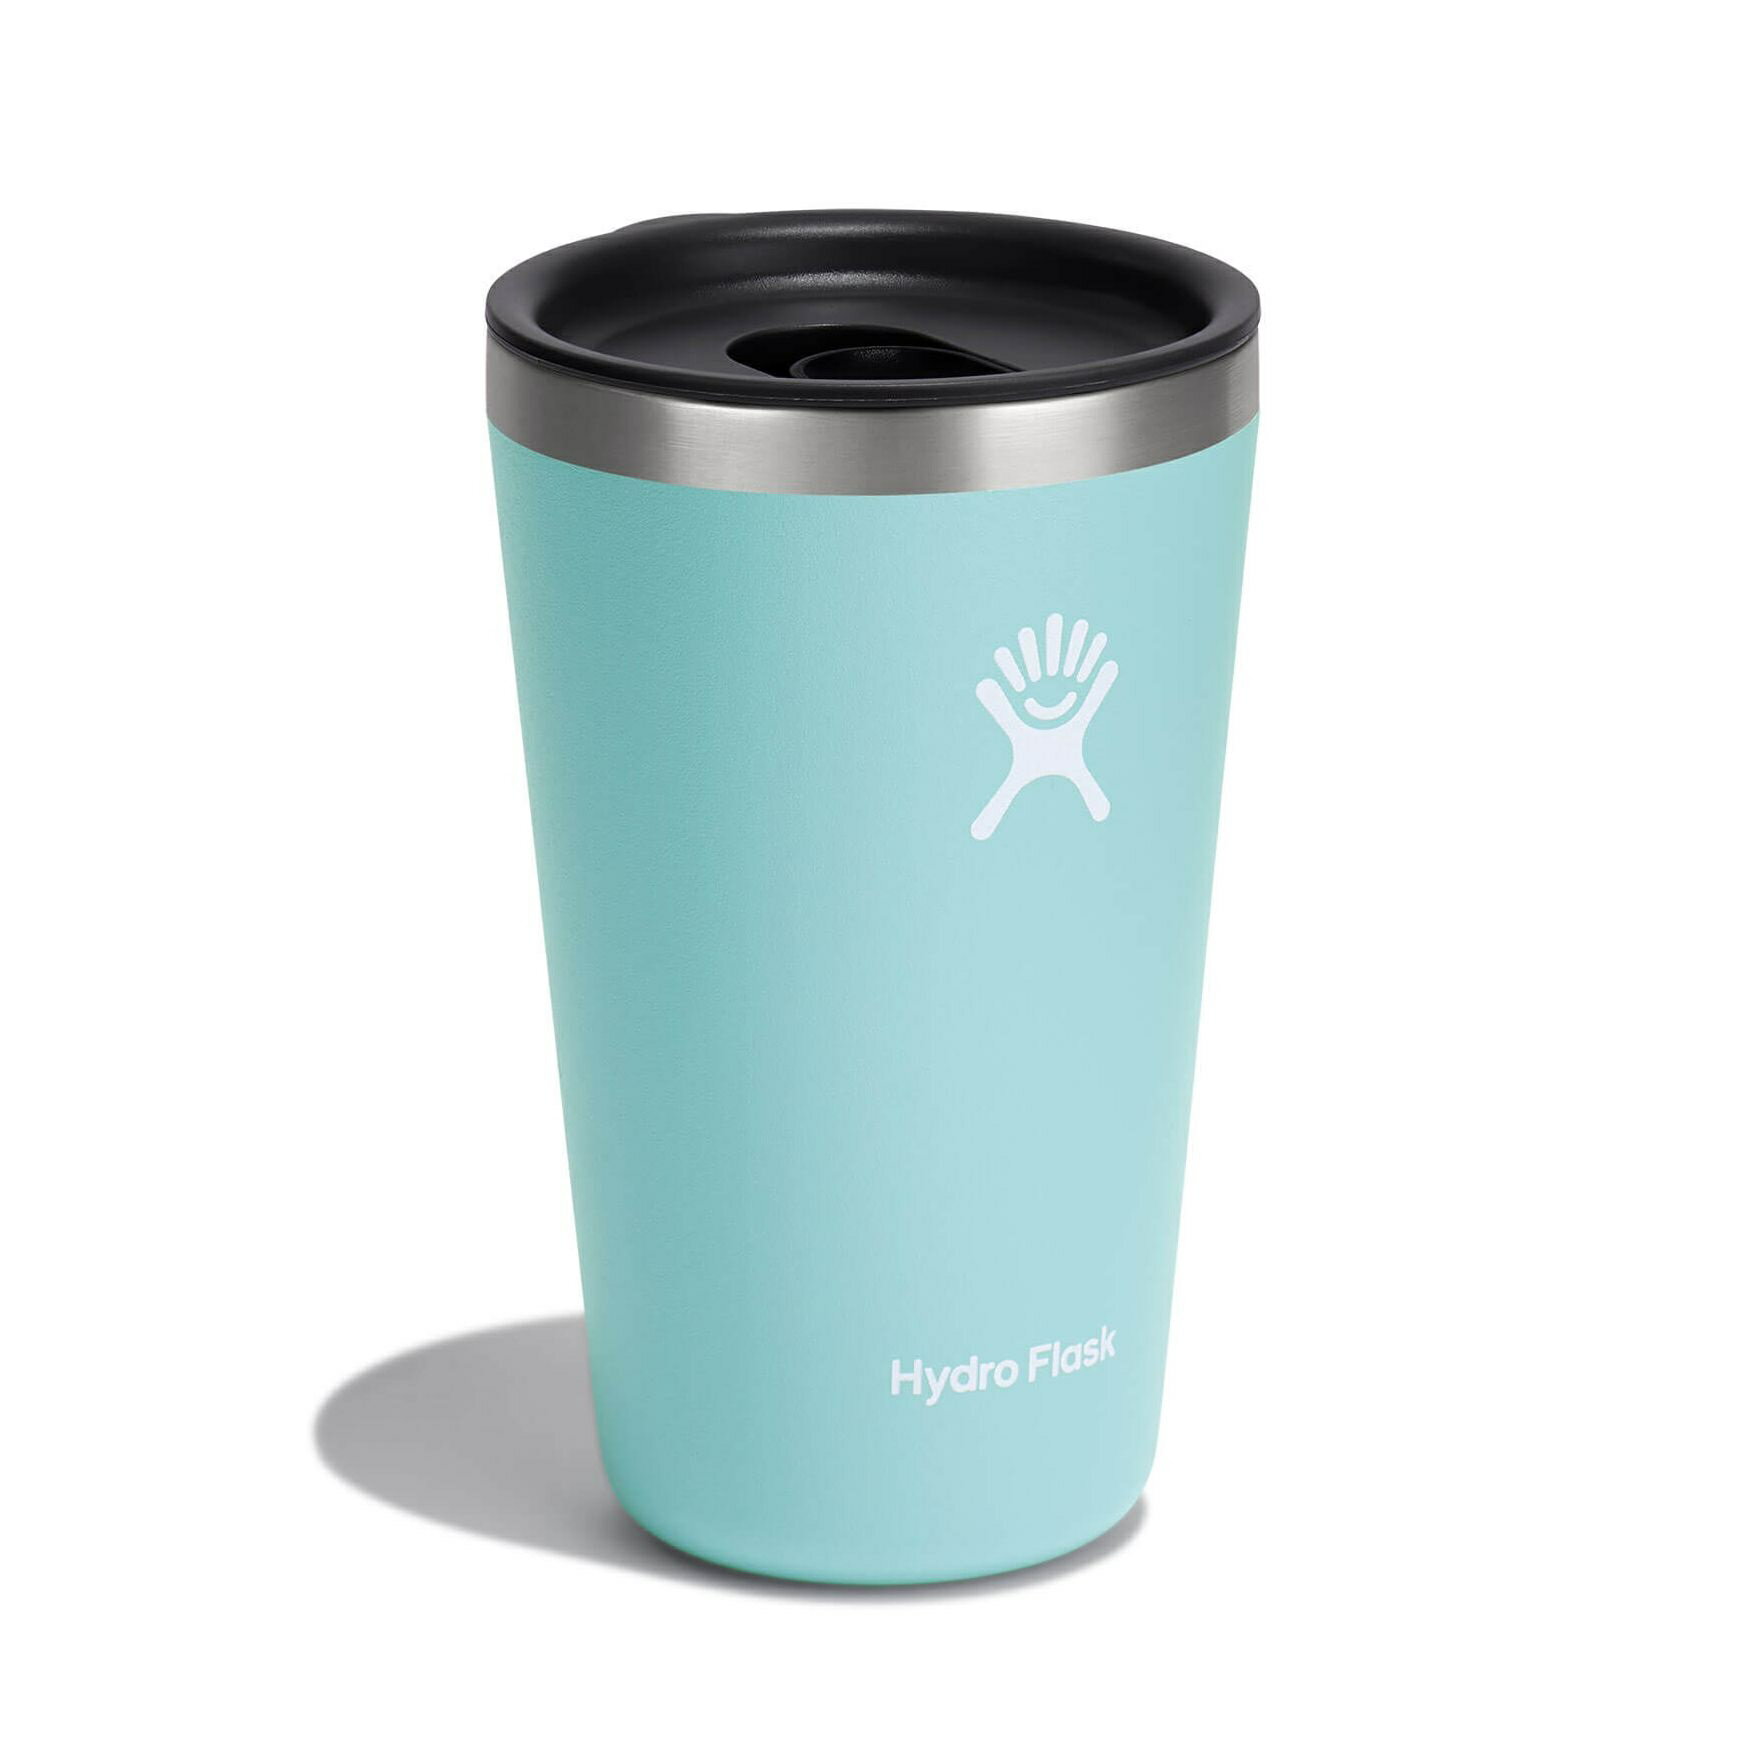 【【蘋果戶外】】Hydro Flask【隨行杯 / 473ml】16oz 保溫隨行杯 (露水綠) 附蓋 咖啡杯 保溫杯 保冷杯 保溫瓶 TUMBLER